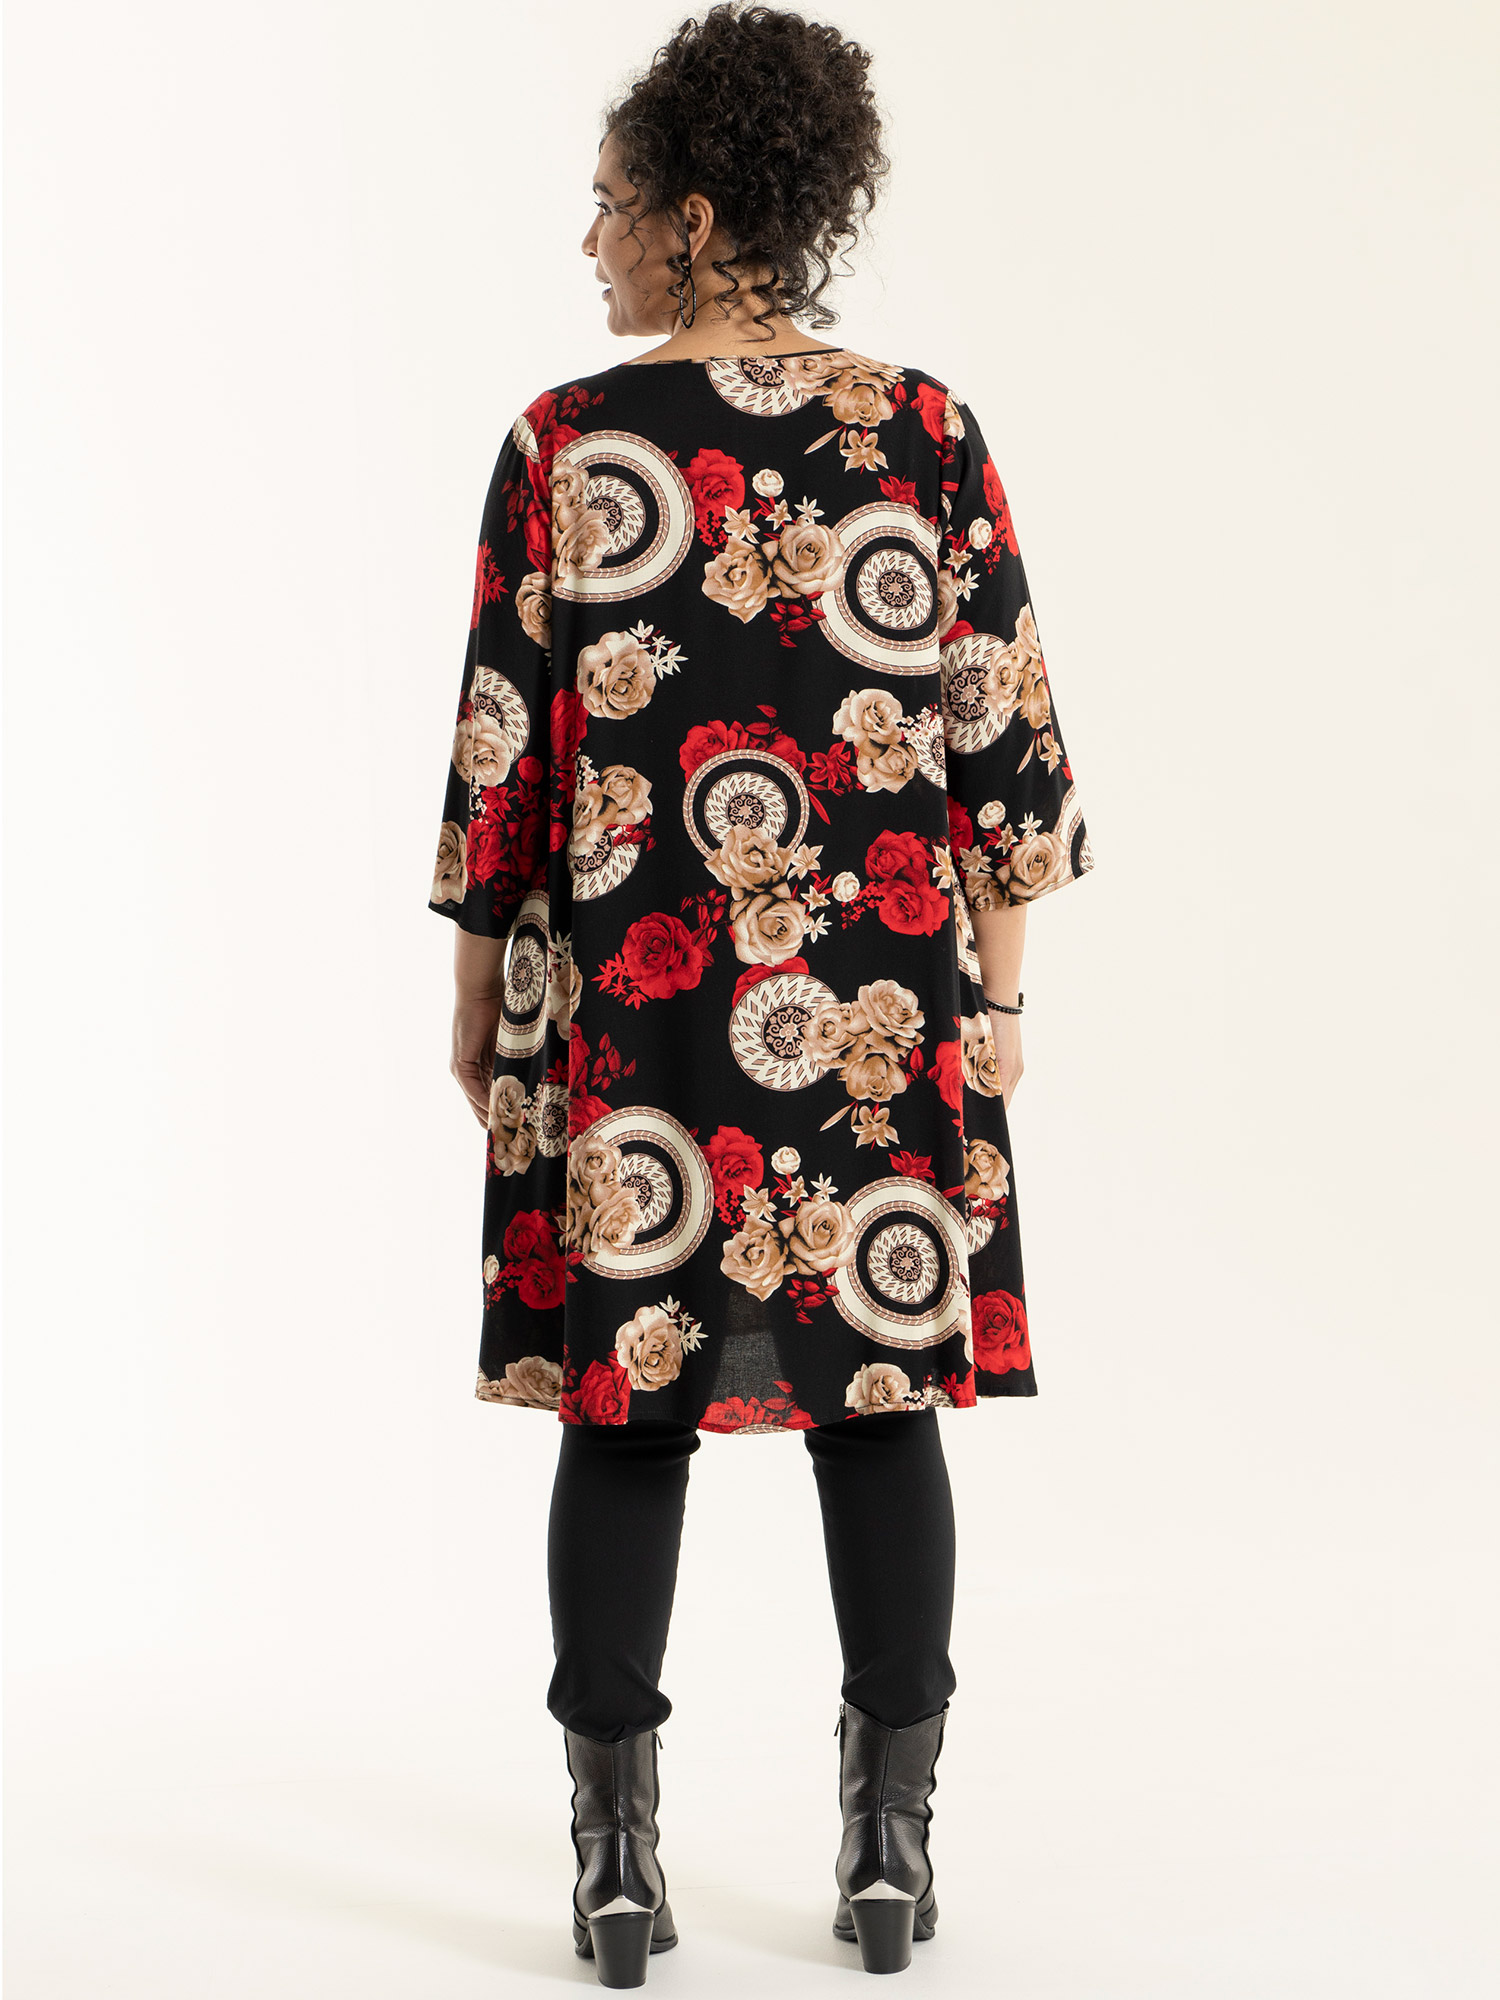 BIRGITTE - Sort viskose kjole med print fra Studio